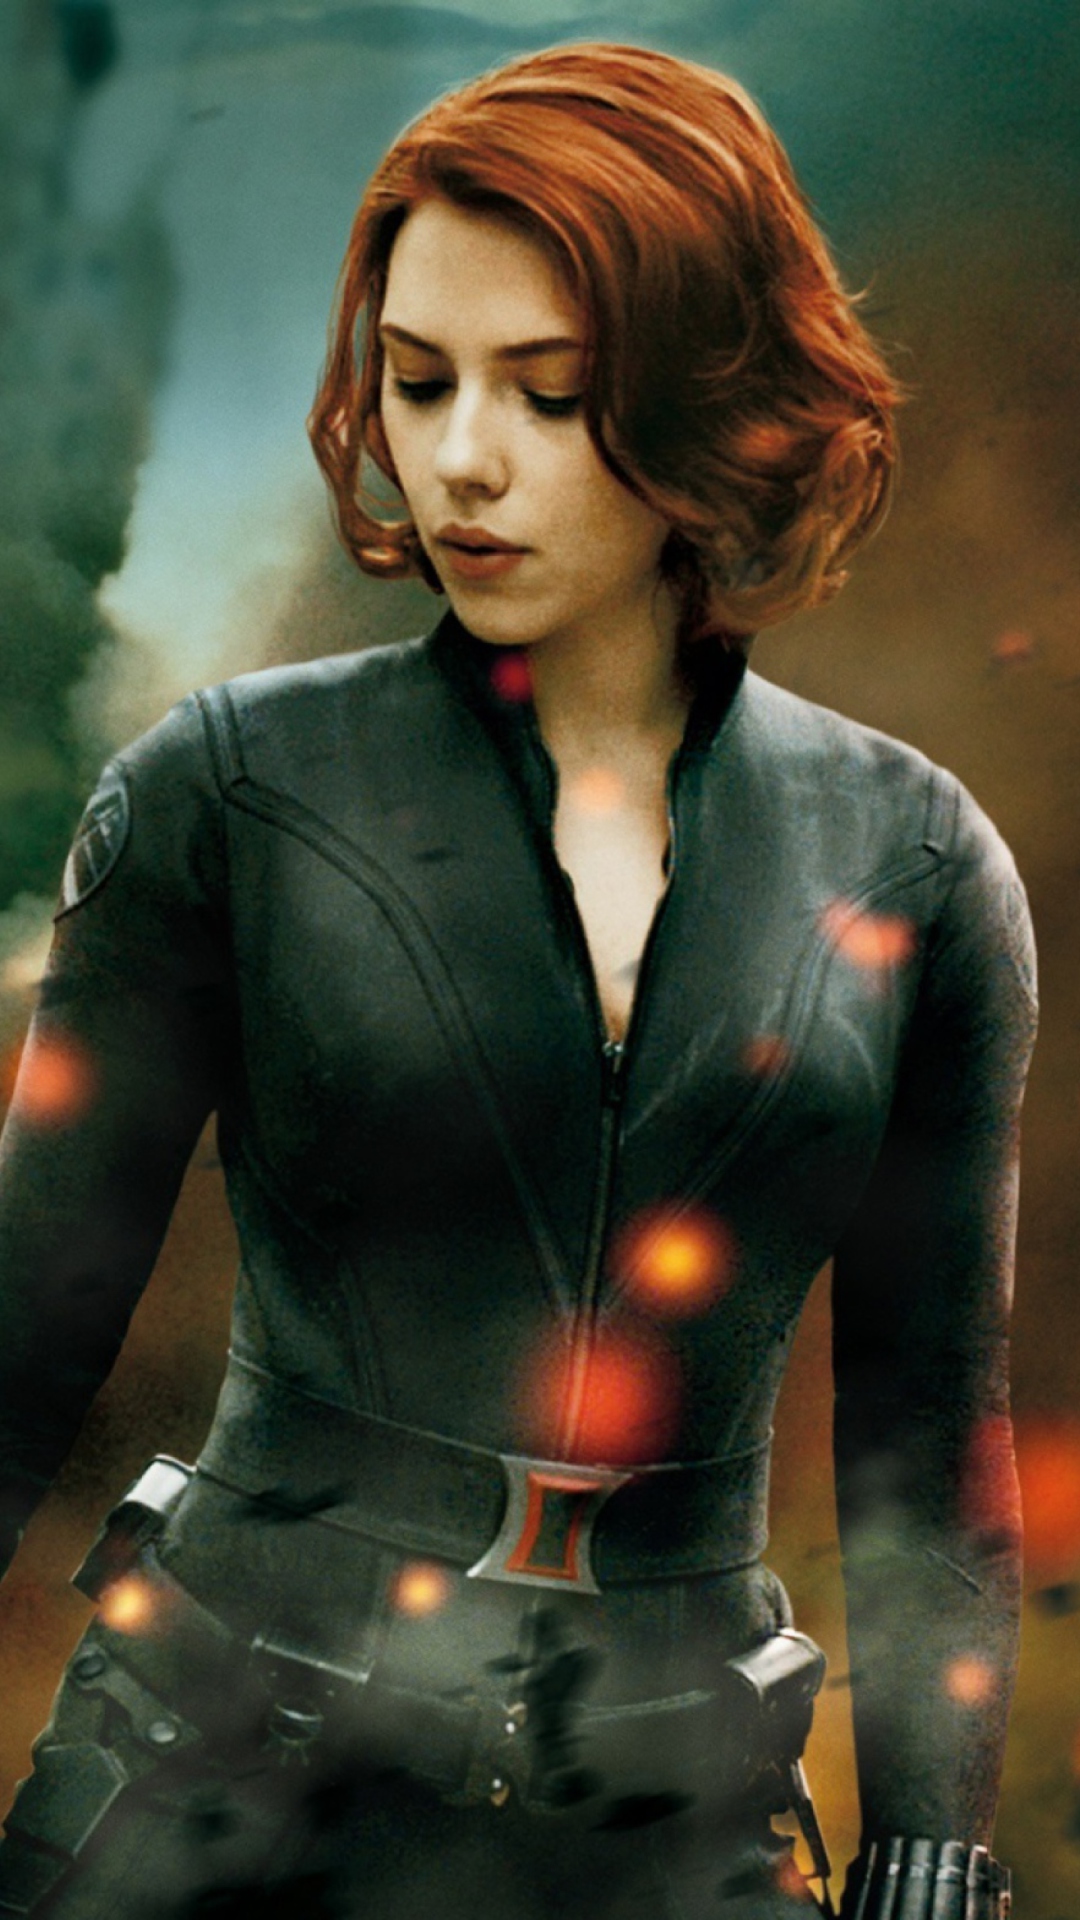 Das The Avengers - Black Widow Wallpaper 1080x1920